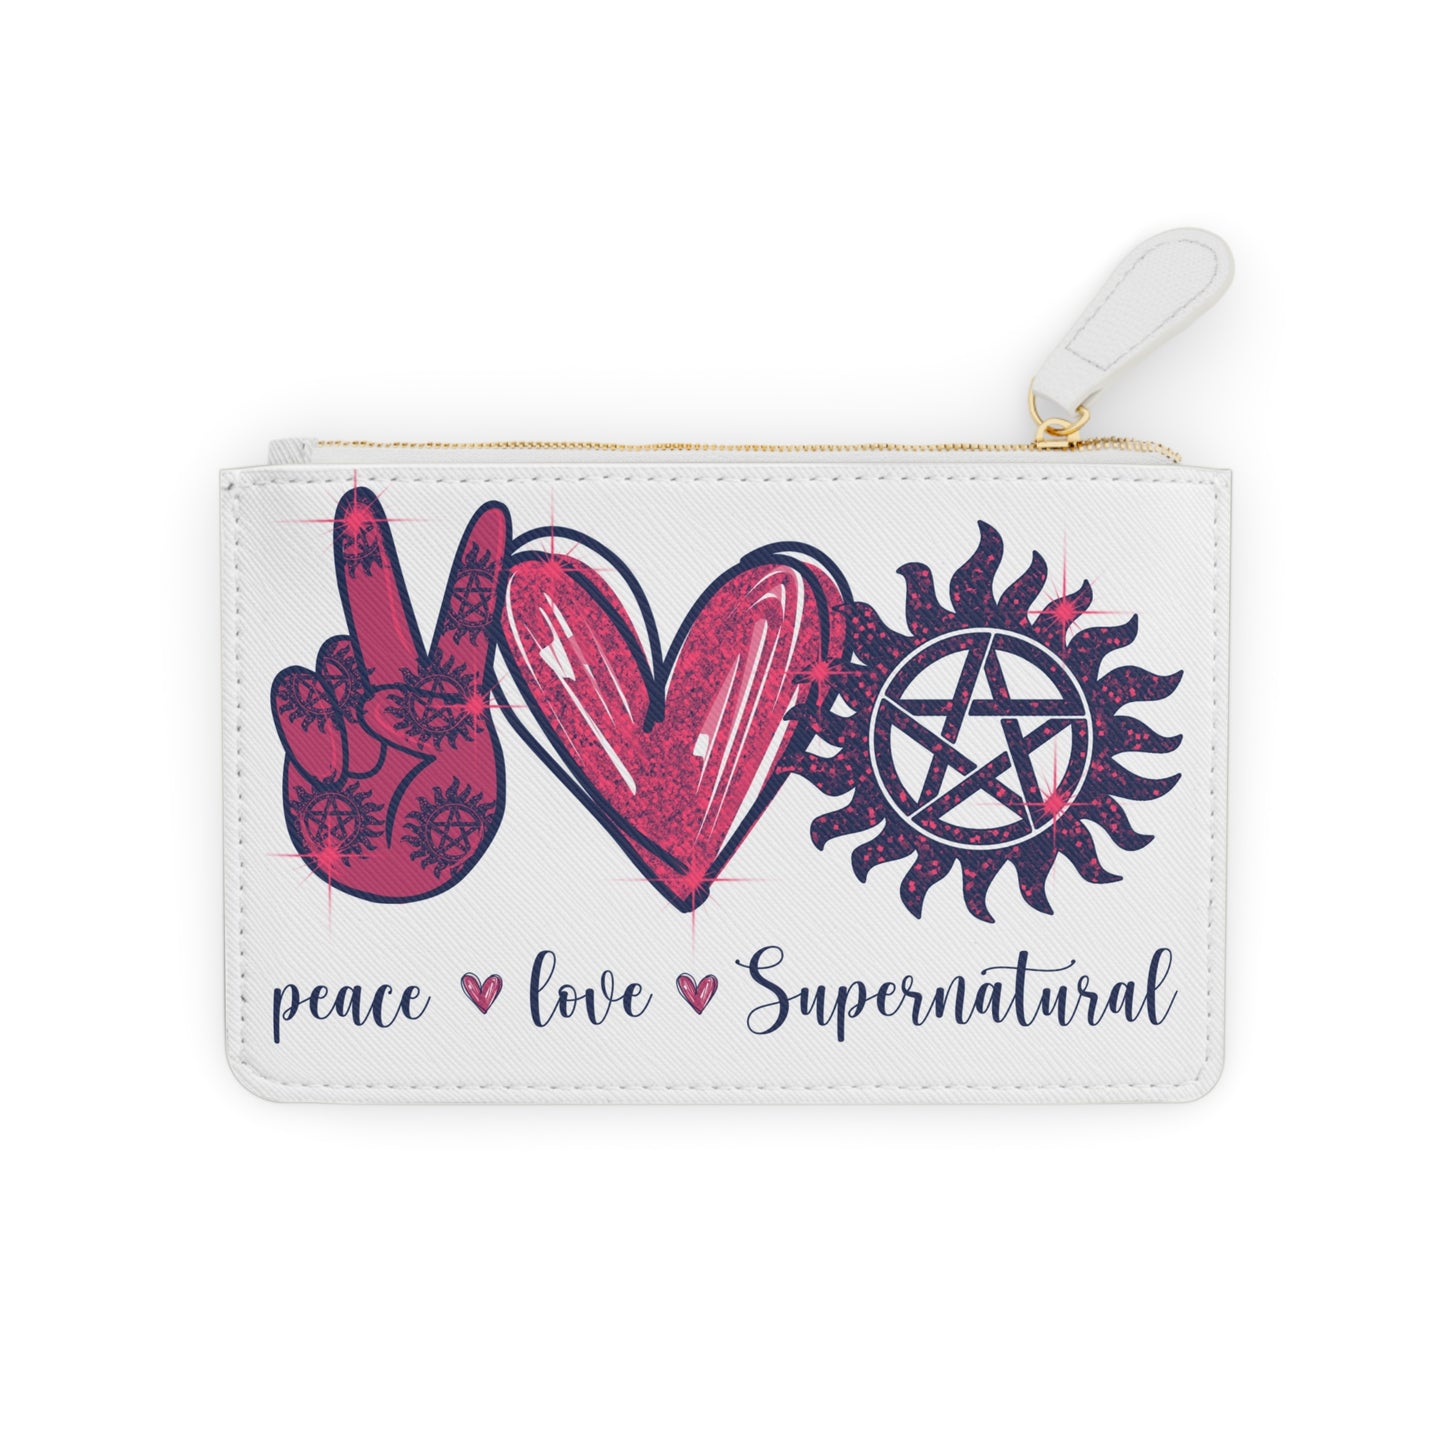 Peace Love Supernatural Mini Clutch Bag